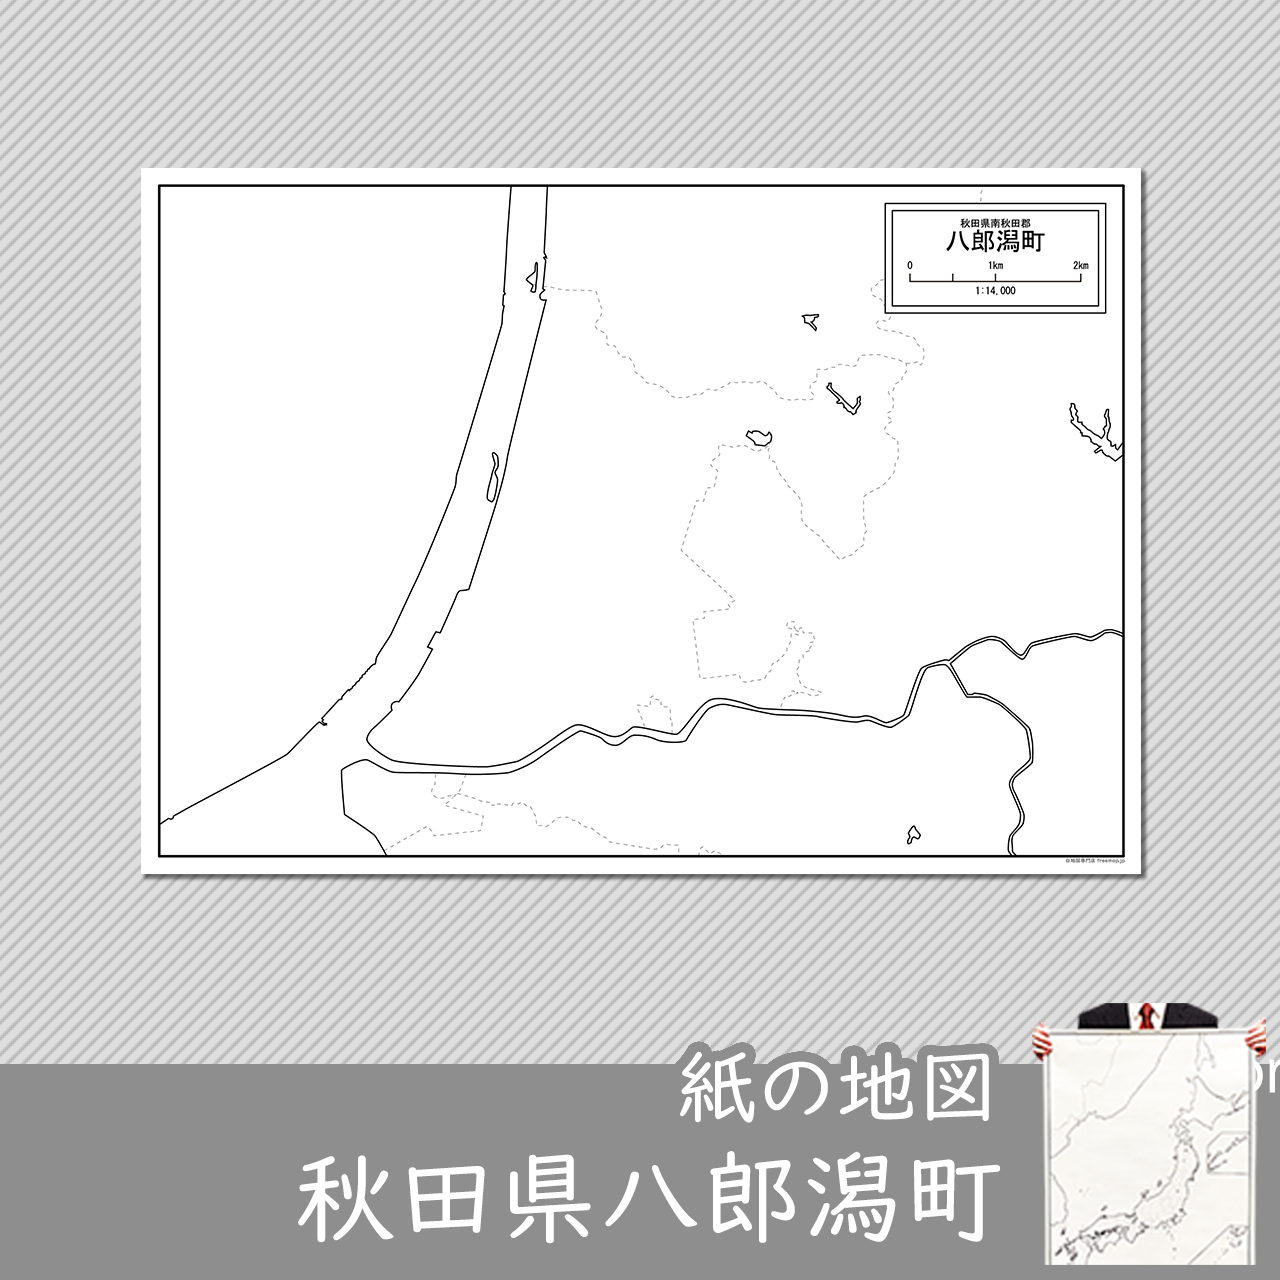 八郎潟町の紙の白地図のサムネイル